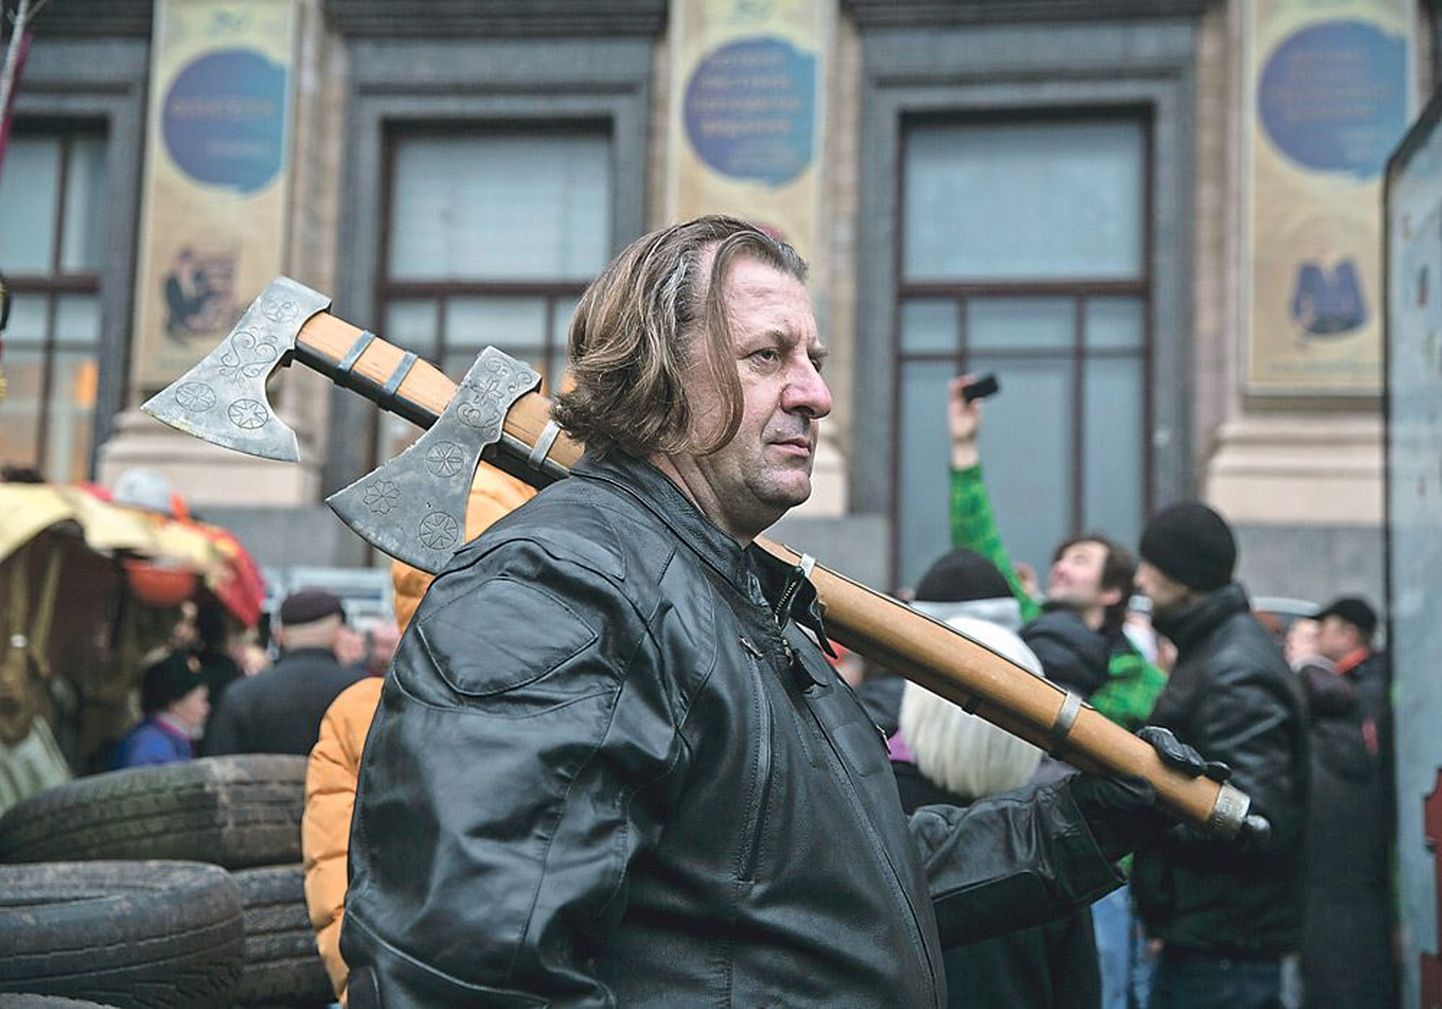 На революционном Майдане все еще можно встретить очень странных персонажей, например, такого вот серьезного мужчину с двумя самодельными топорами.